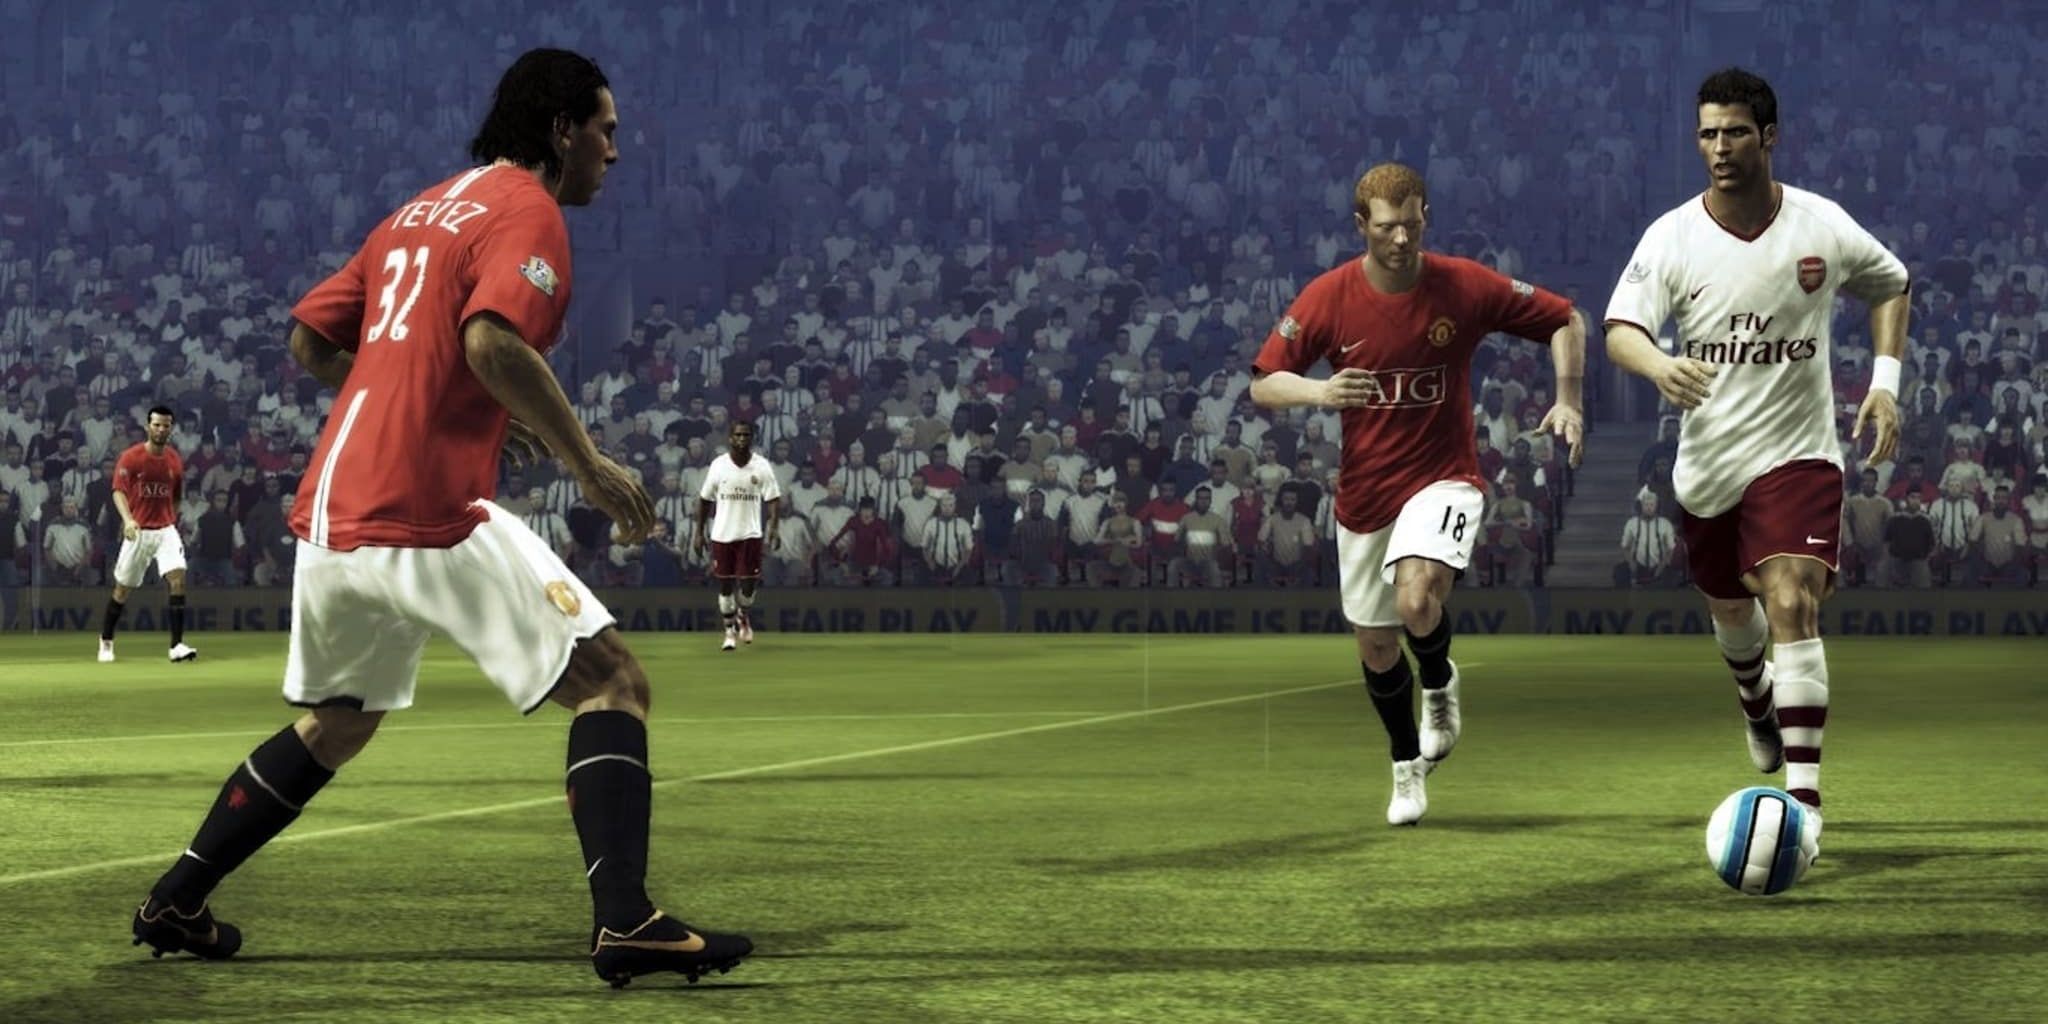 Los jugadores del Manchester United intentan tomar el balón en FIFA 09.